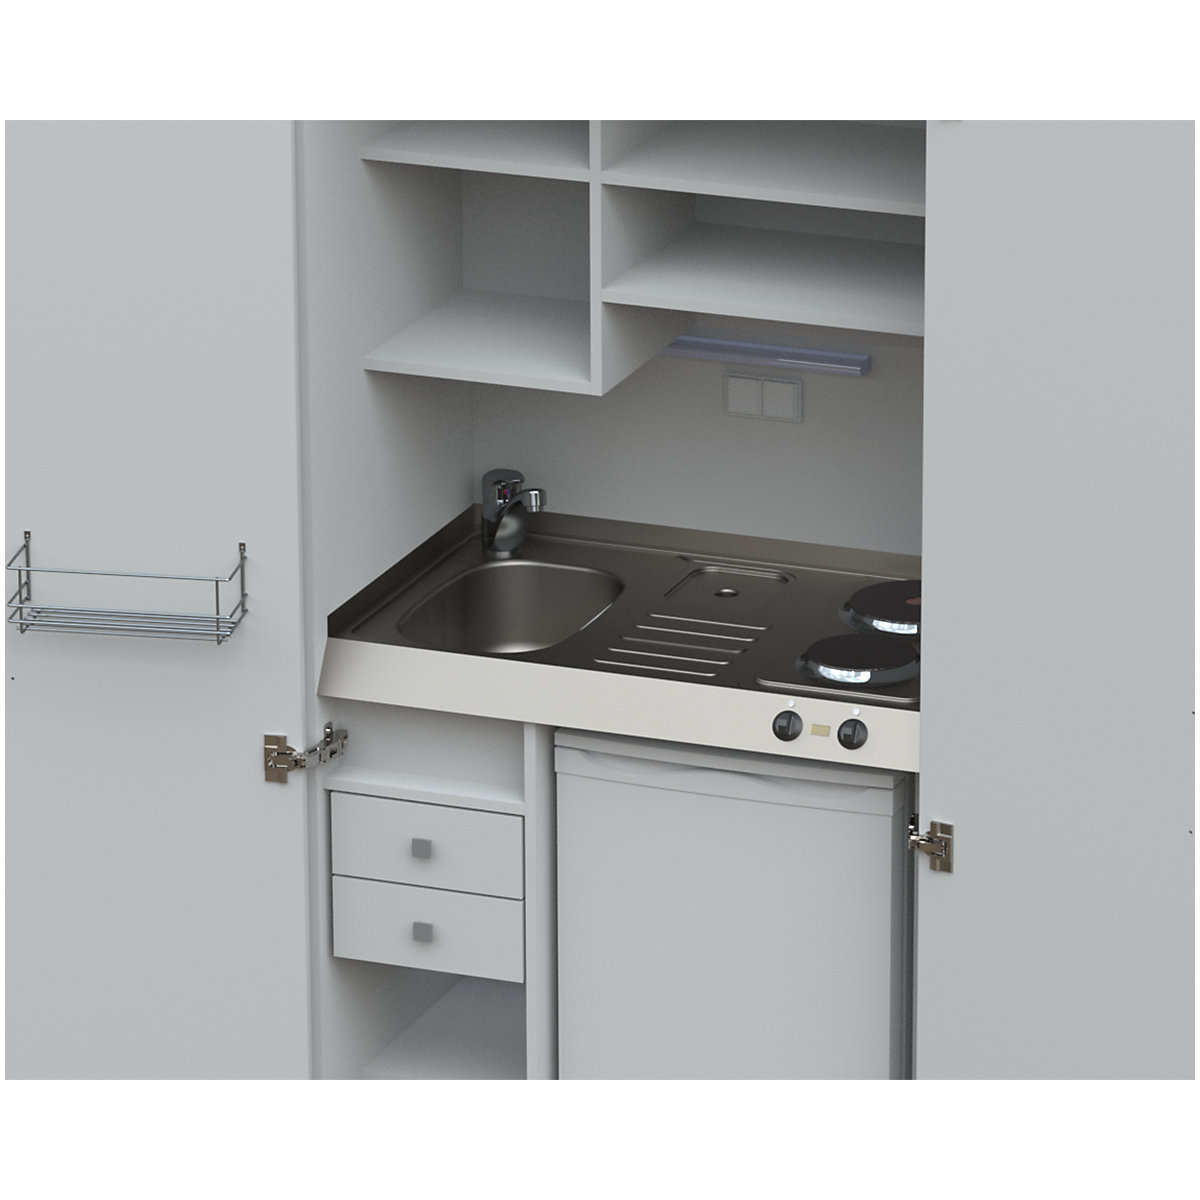 Cocina-armario con puertas batientes (Imagen del producto 35)-34